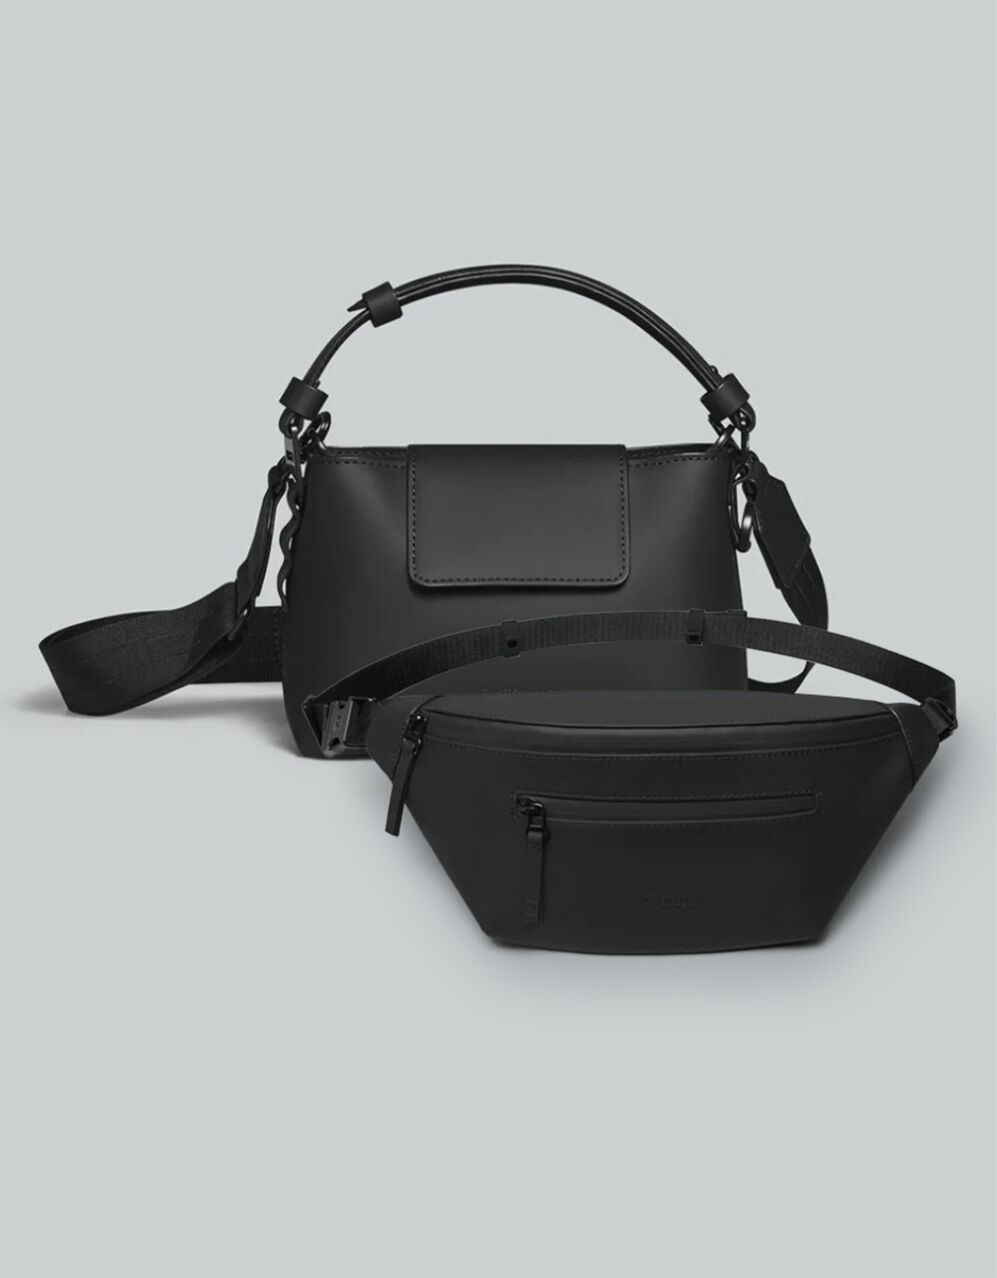 スプラッシーニ: プレミアム防水ファッションバッグ ギフトセット